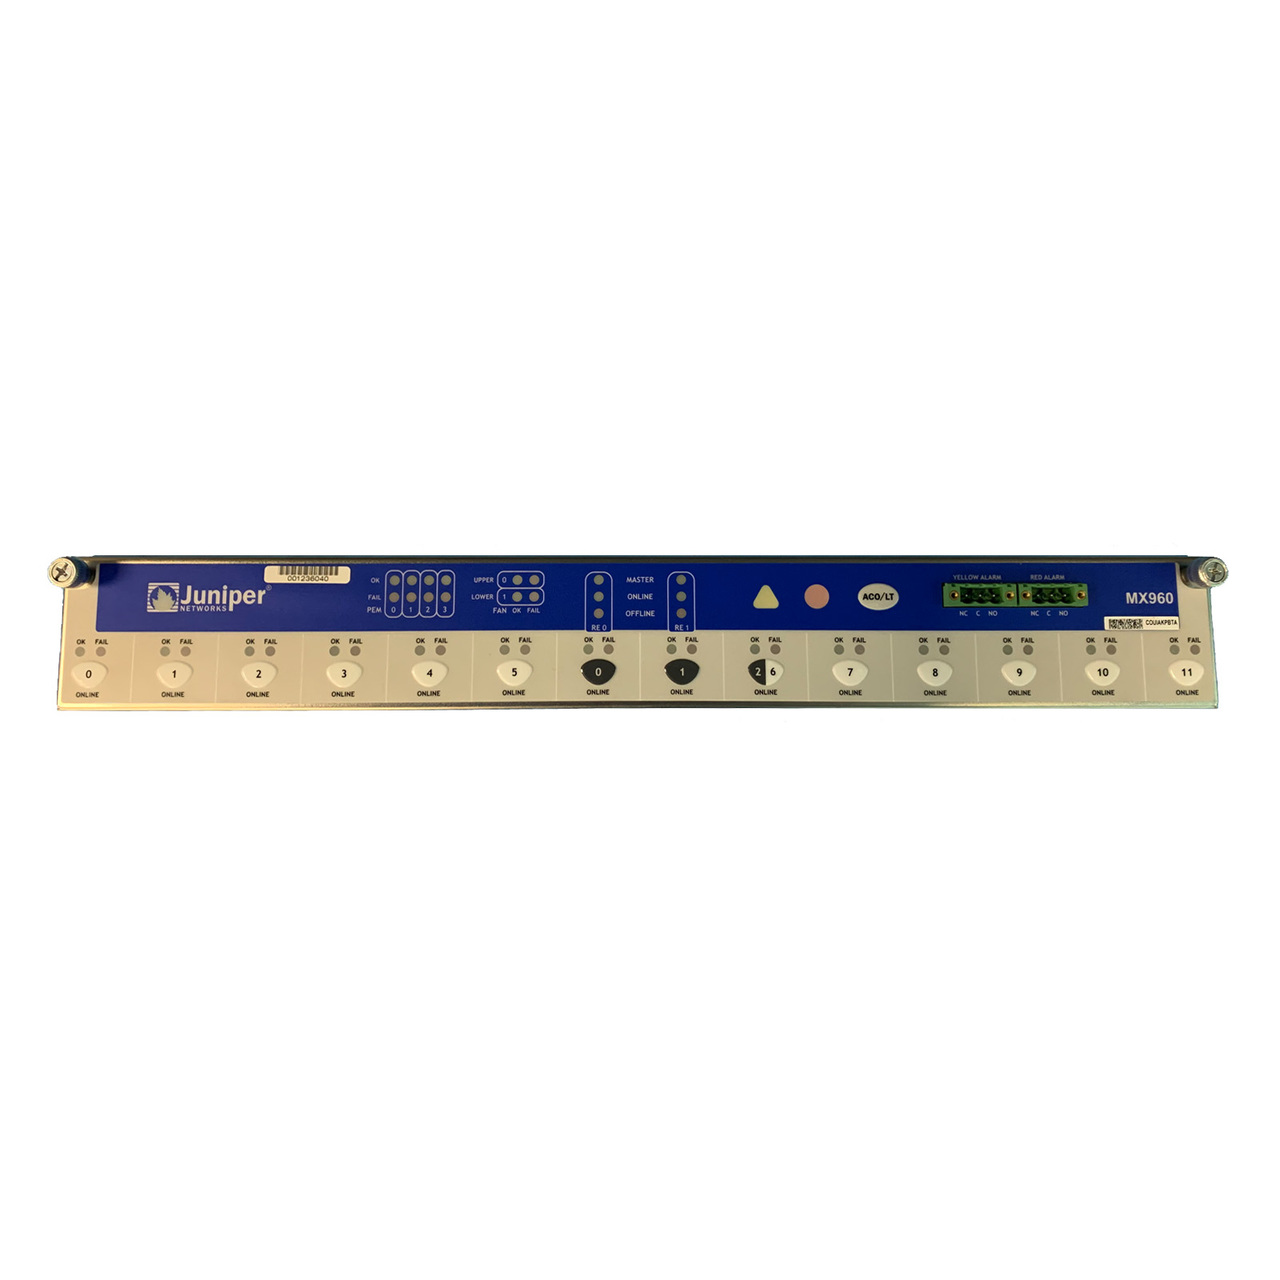 710-014974 | Juniper Mx960 Control Panel